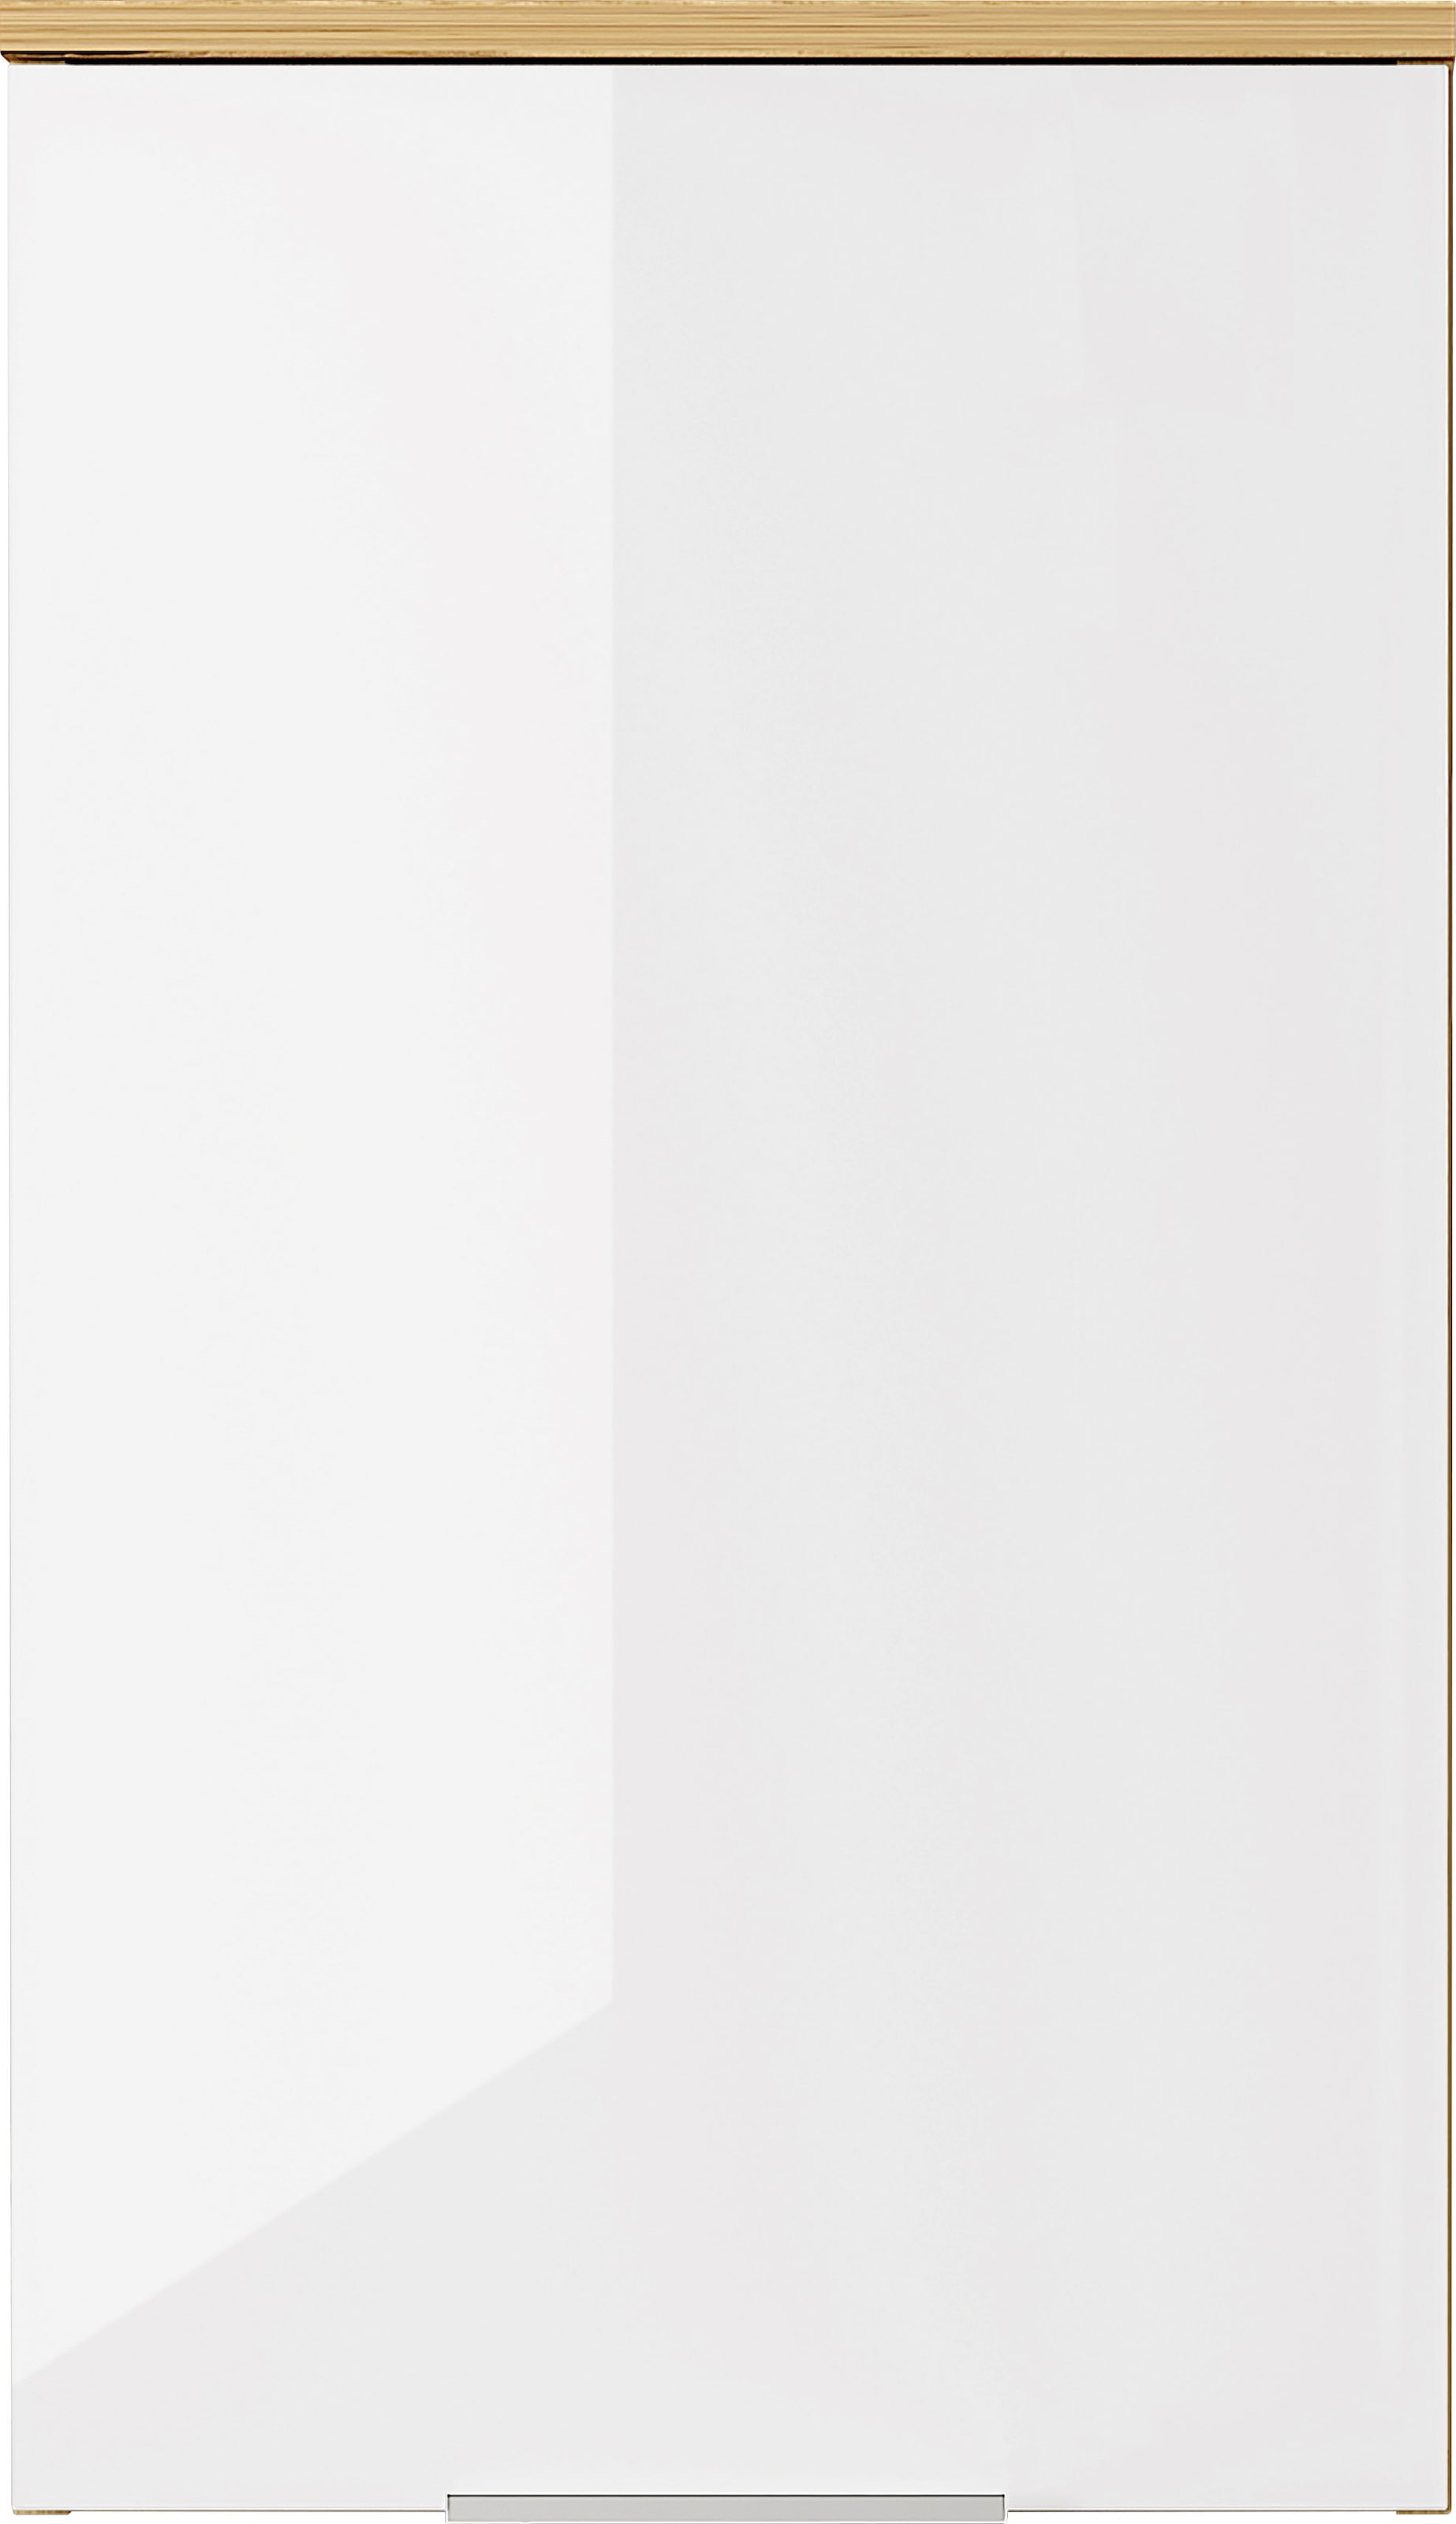 GERMANIA Hängeschrank »Avino«, Breite 39 cm, Glasfront, Soft-Close-Funktion